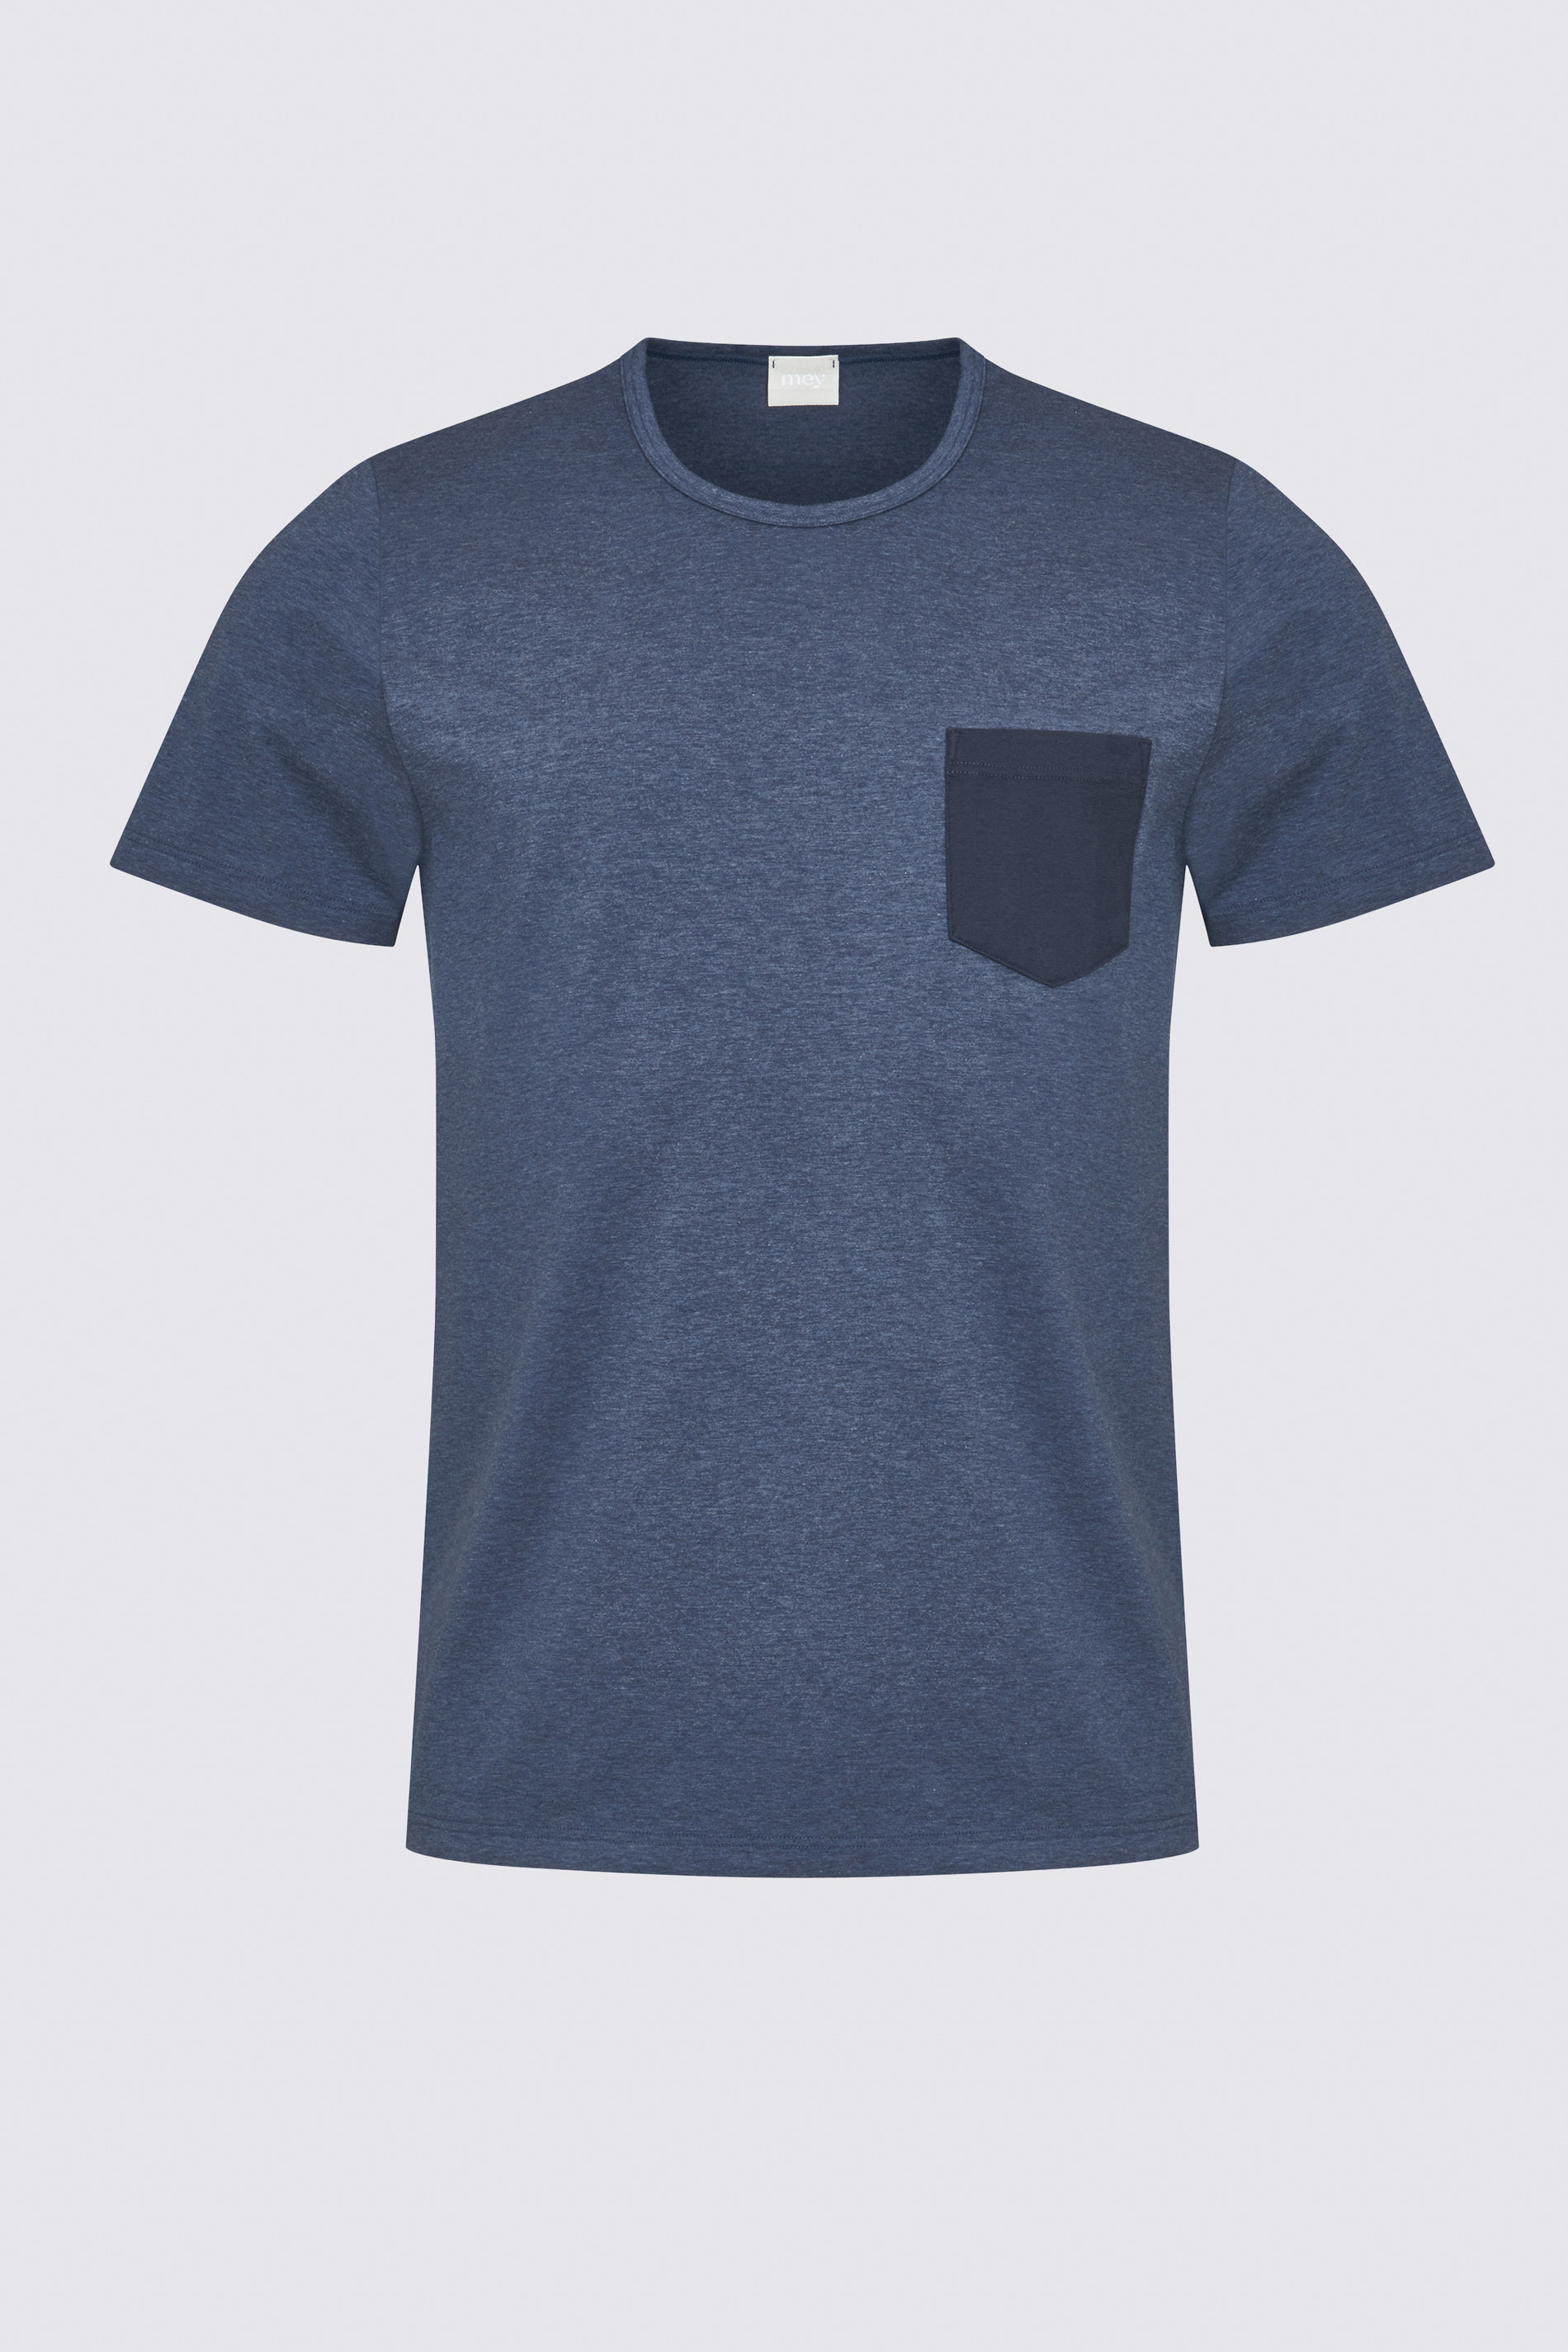 T-shirt Denim Blue Serie Denim Uitknippen | mey®